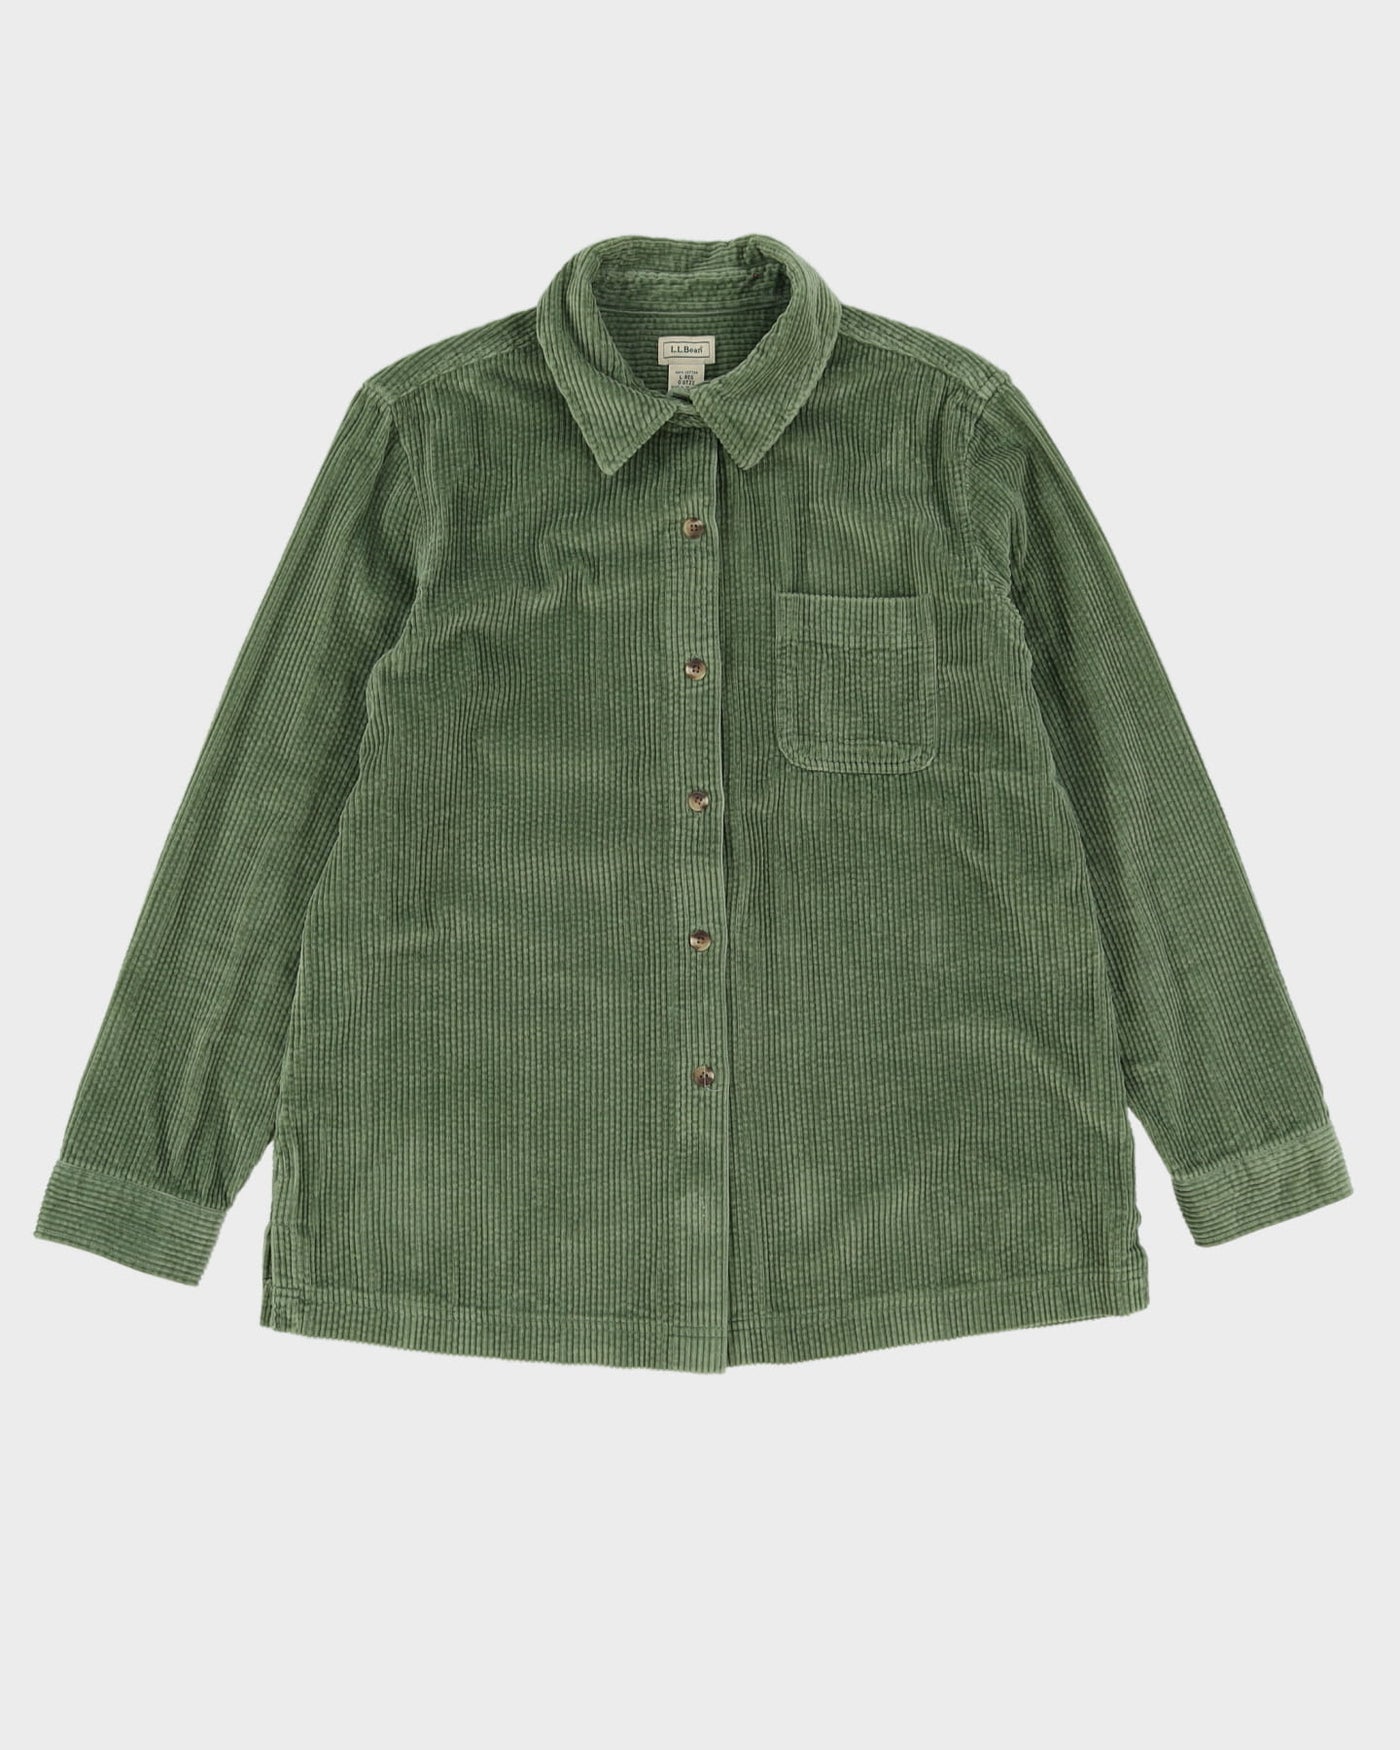 L.L. Bean Green Cord Shirt - L